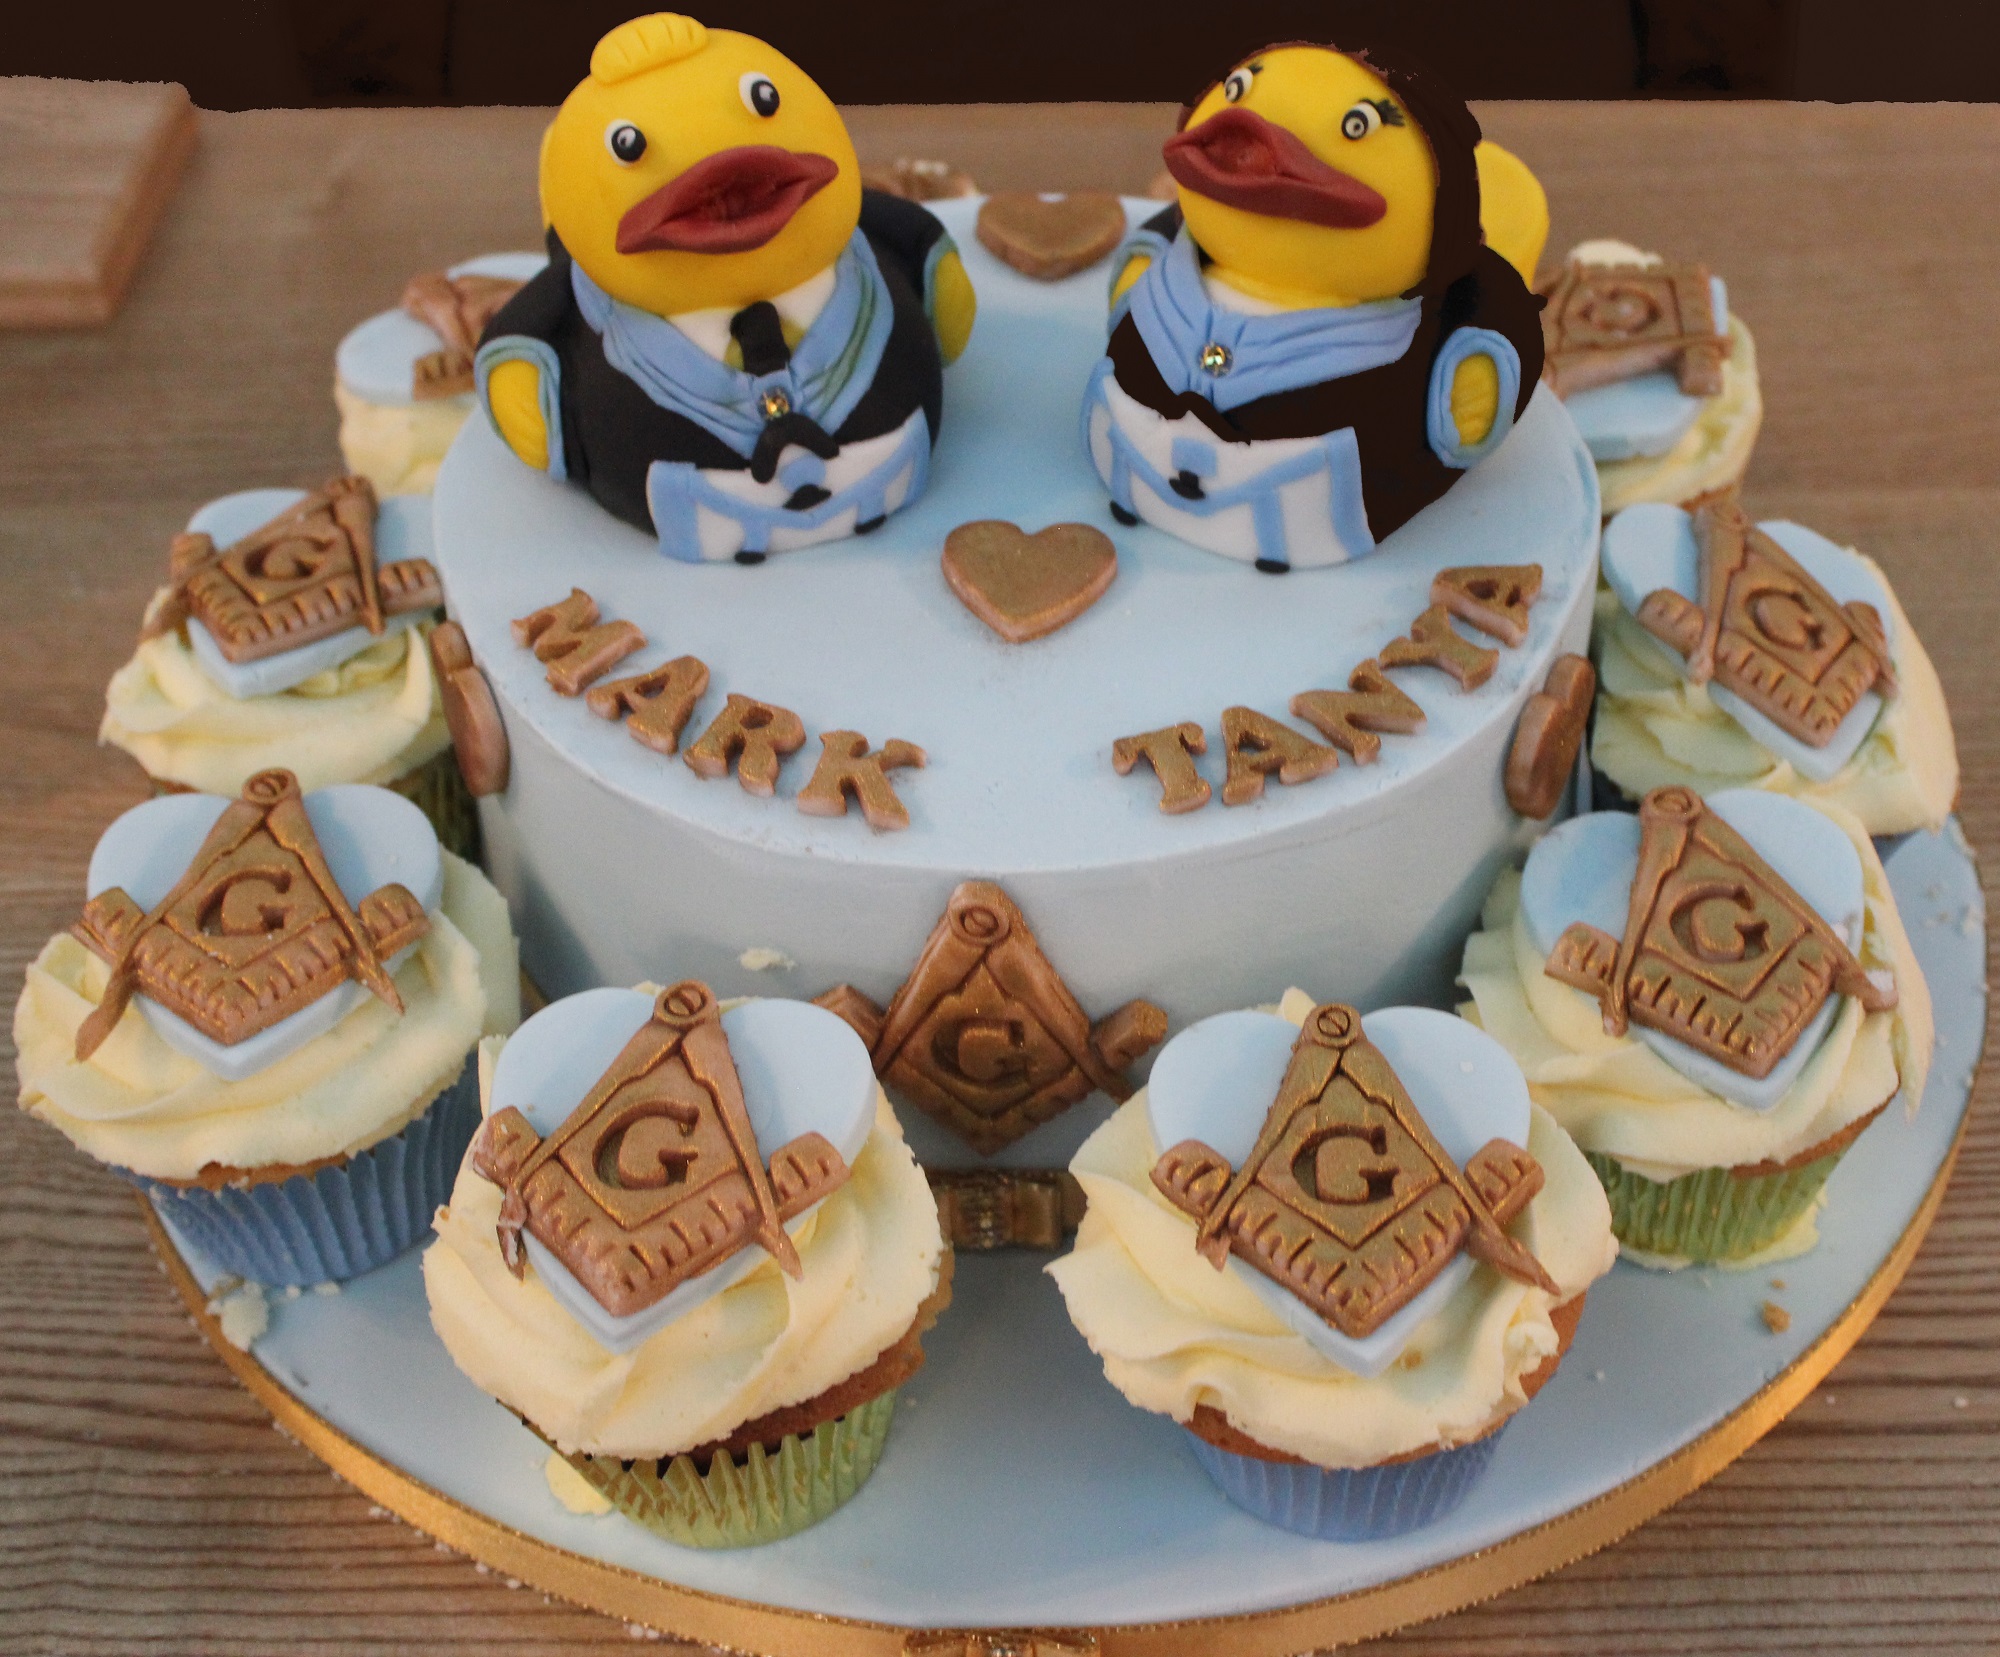 Mark and Tanyas Masonic themed wedding cake